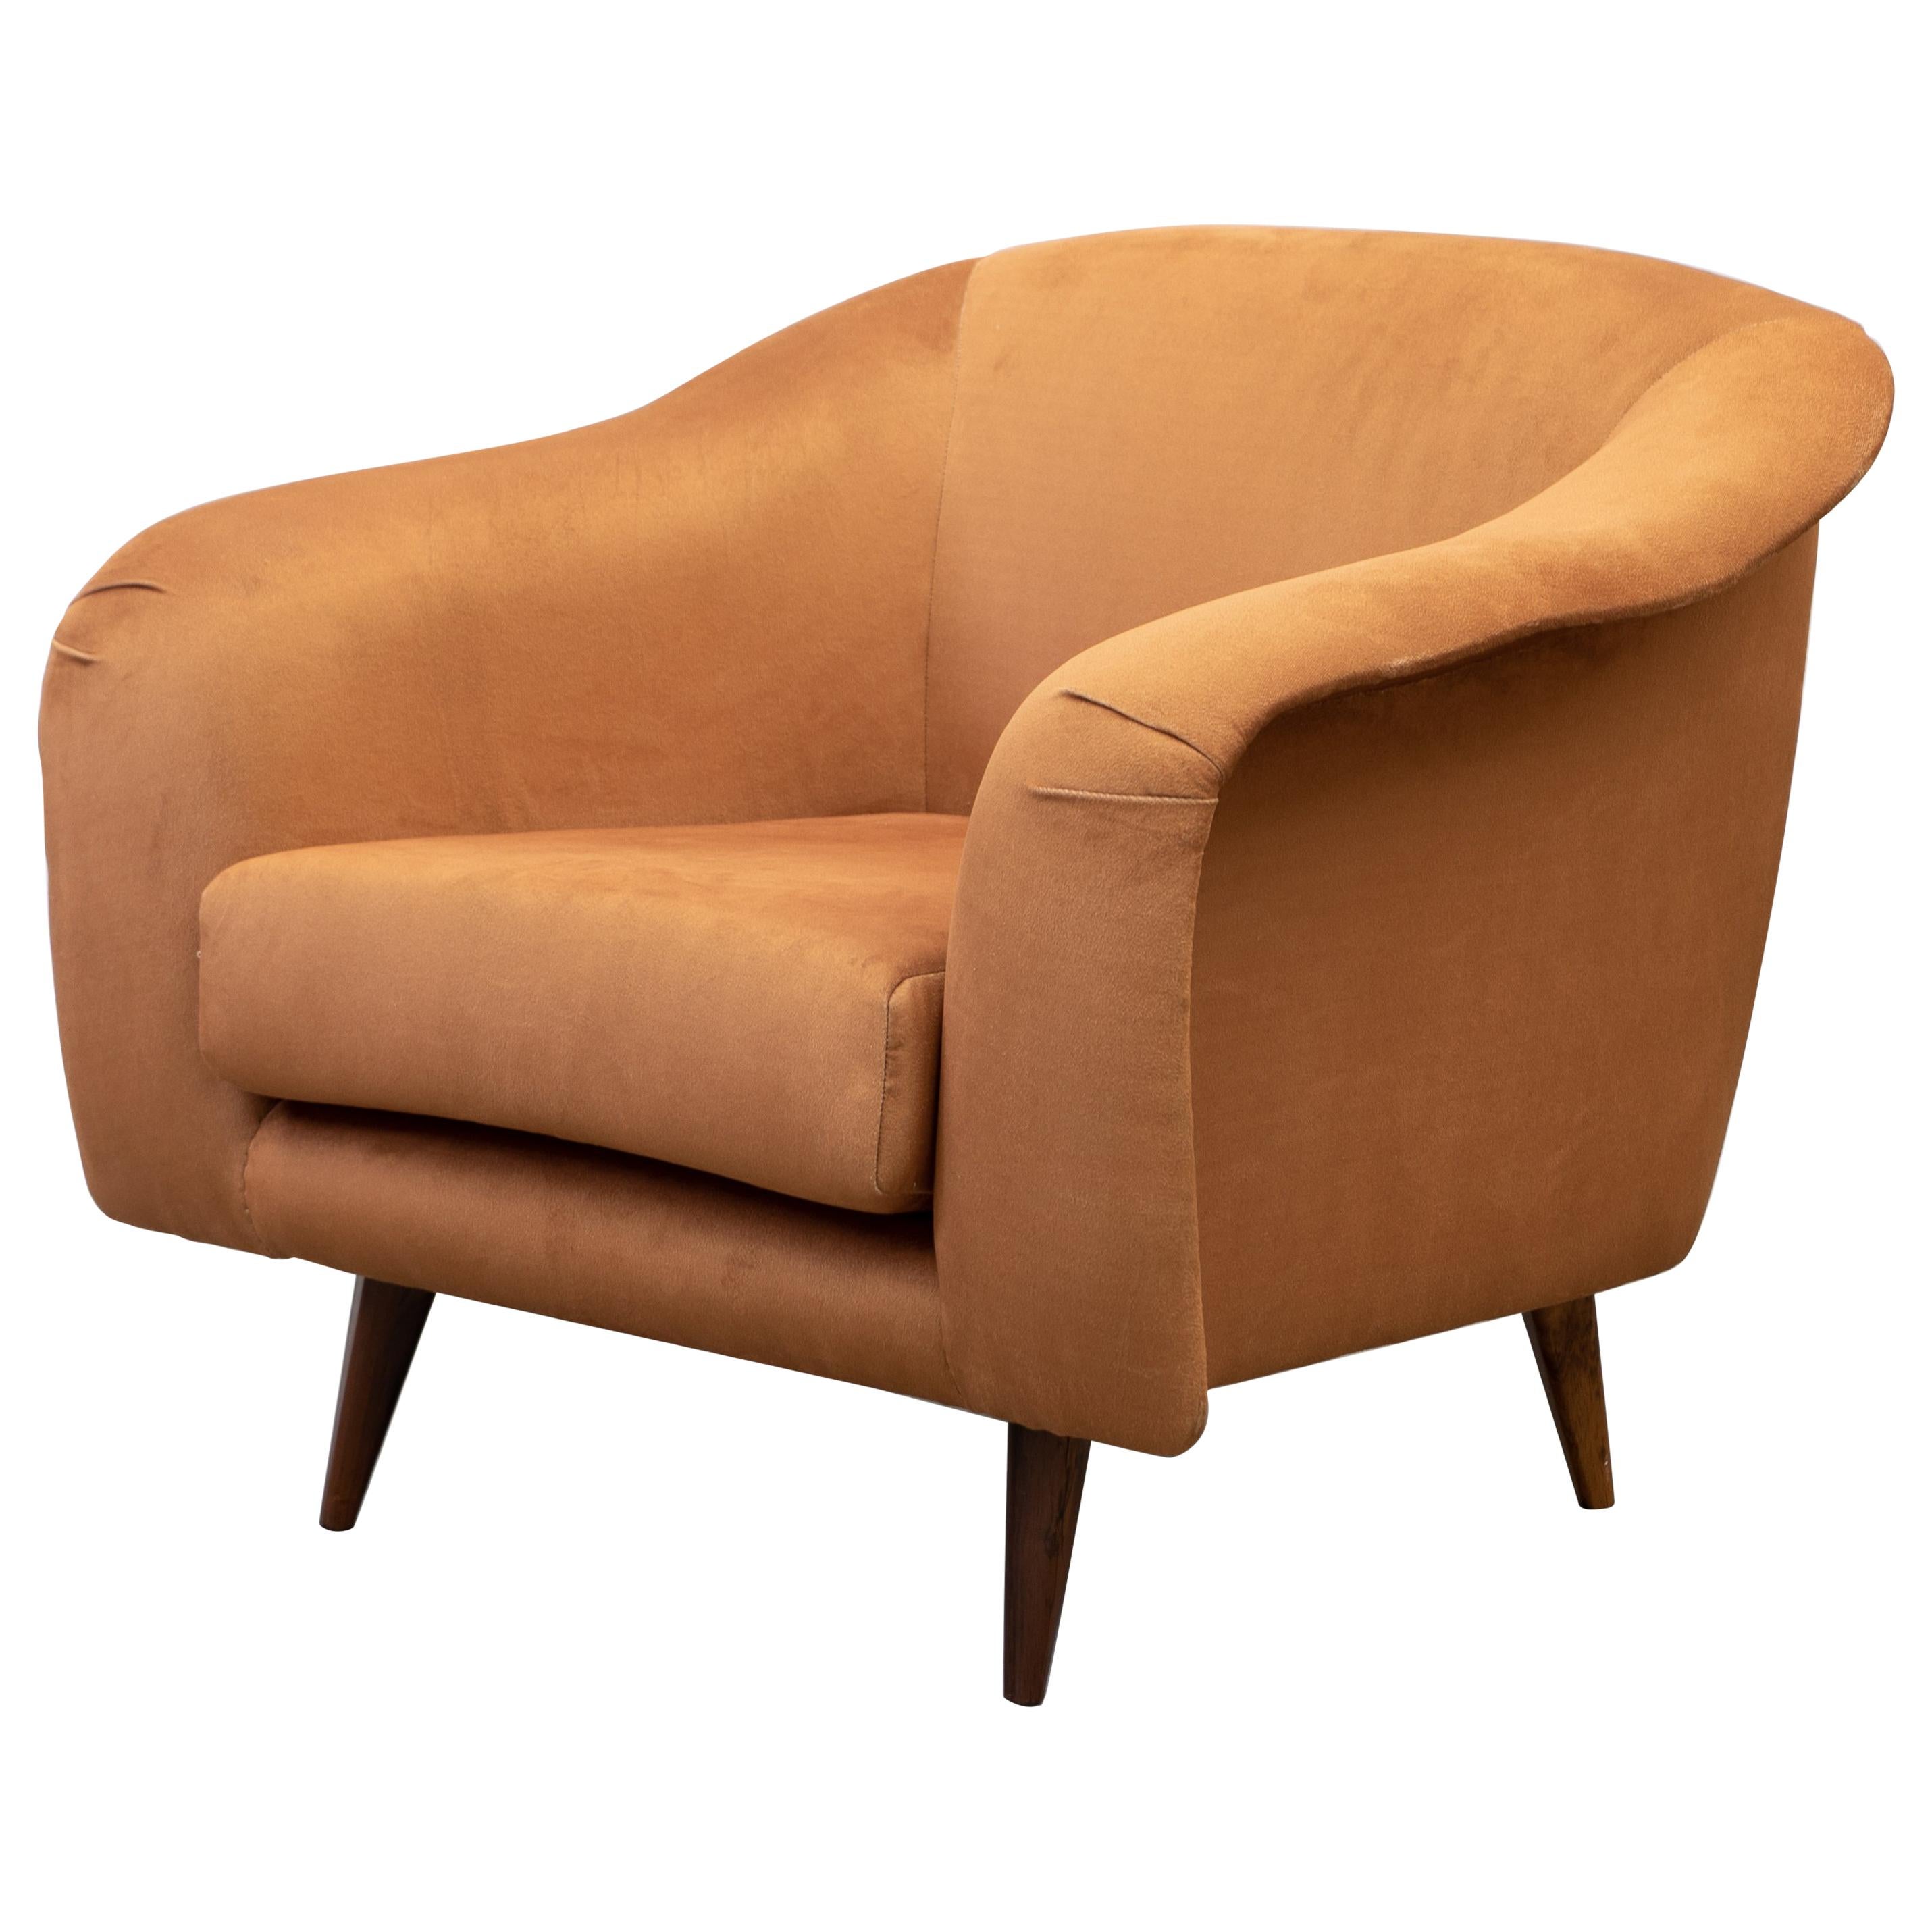 Pair of "Curva" Armchair, Joaquim Tenreiro, 1960s, Brazilian Midcentury Design